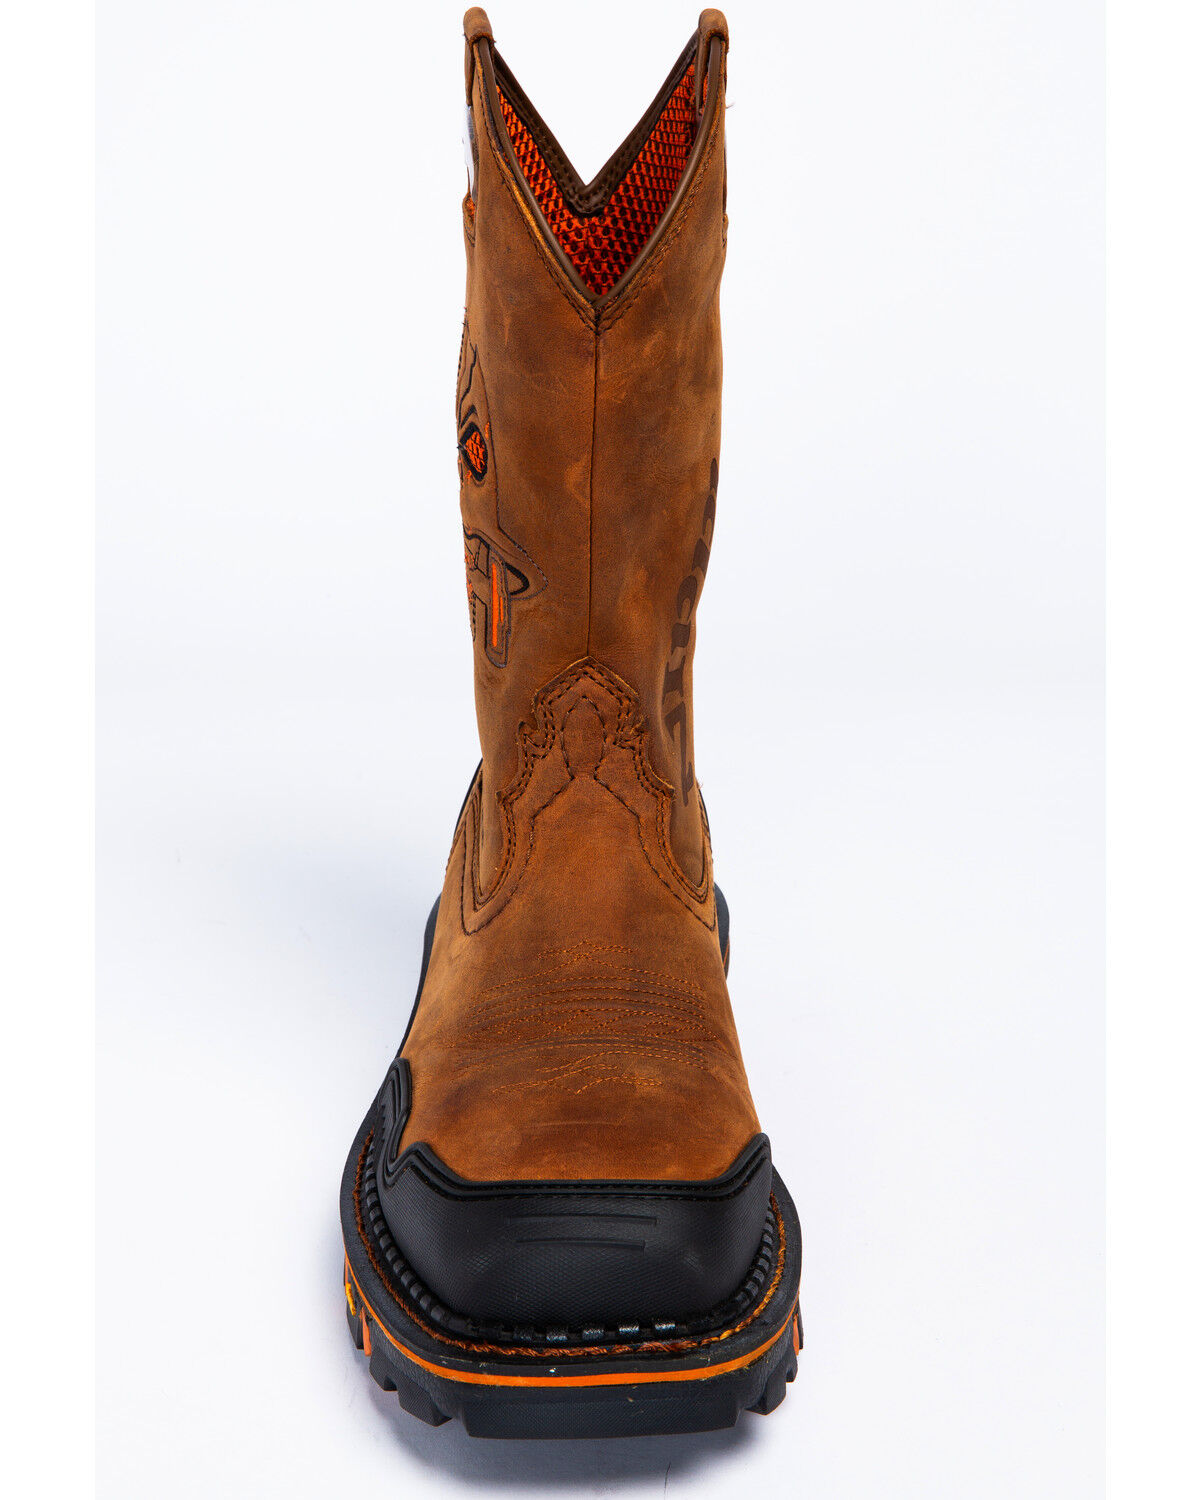 composite toe cowboy boots